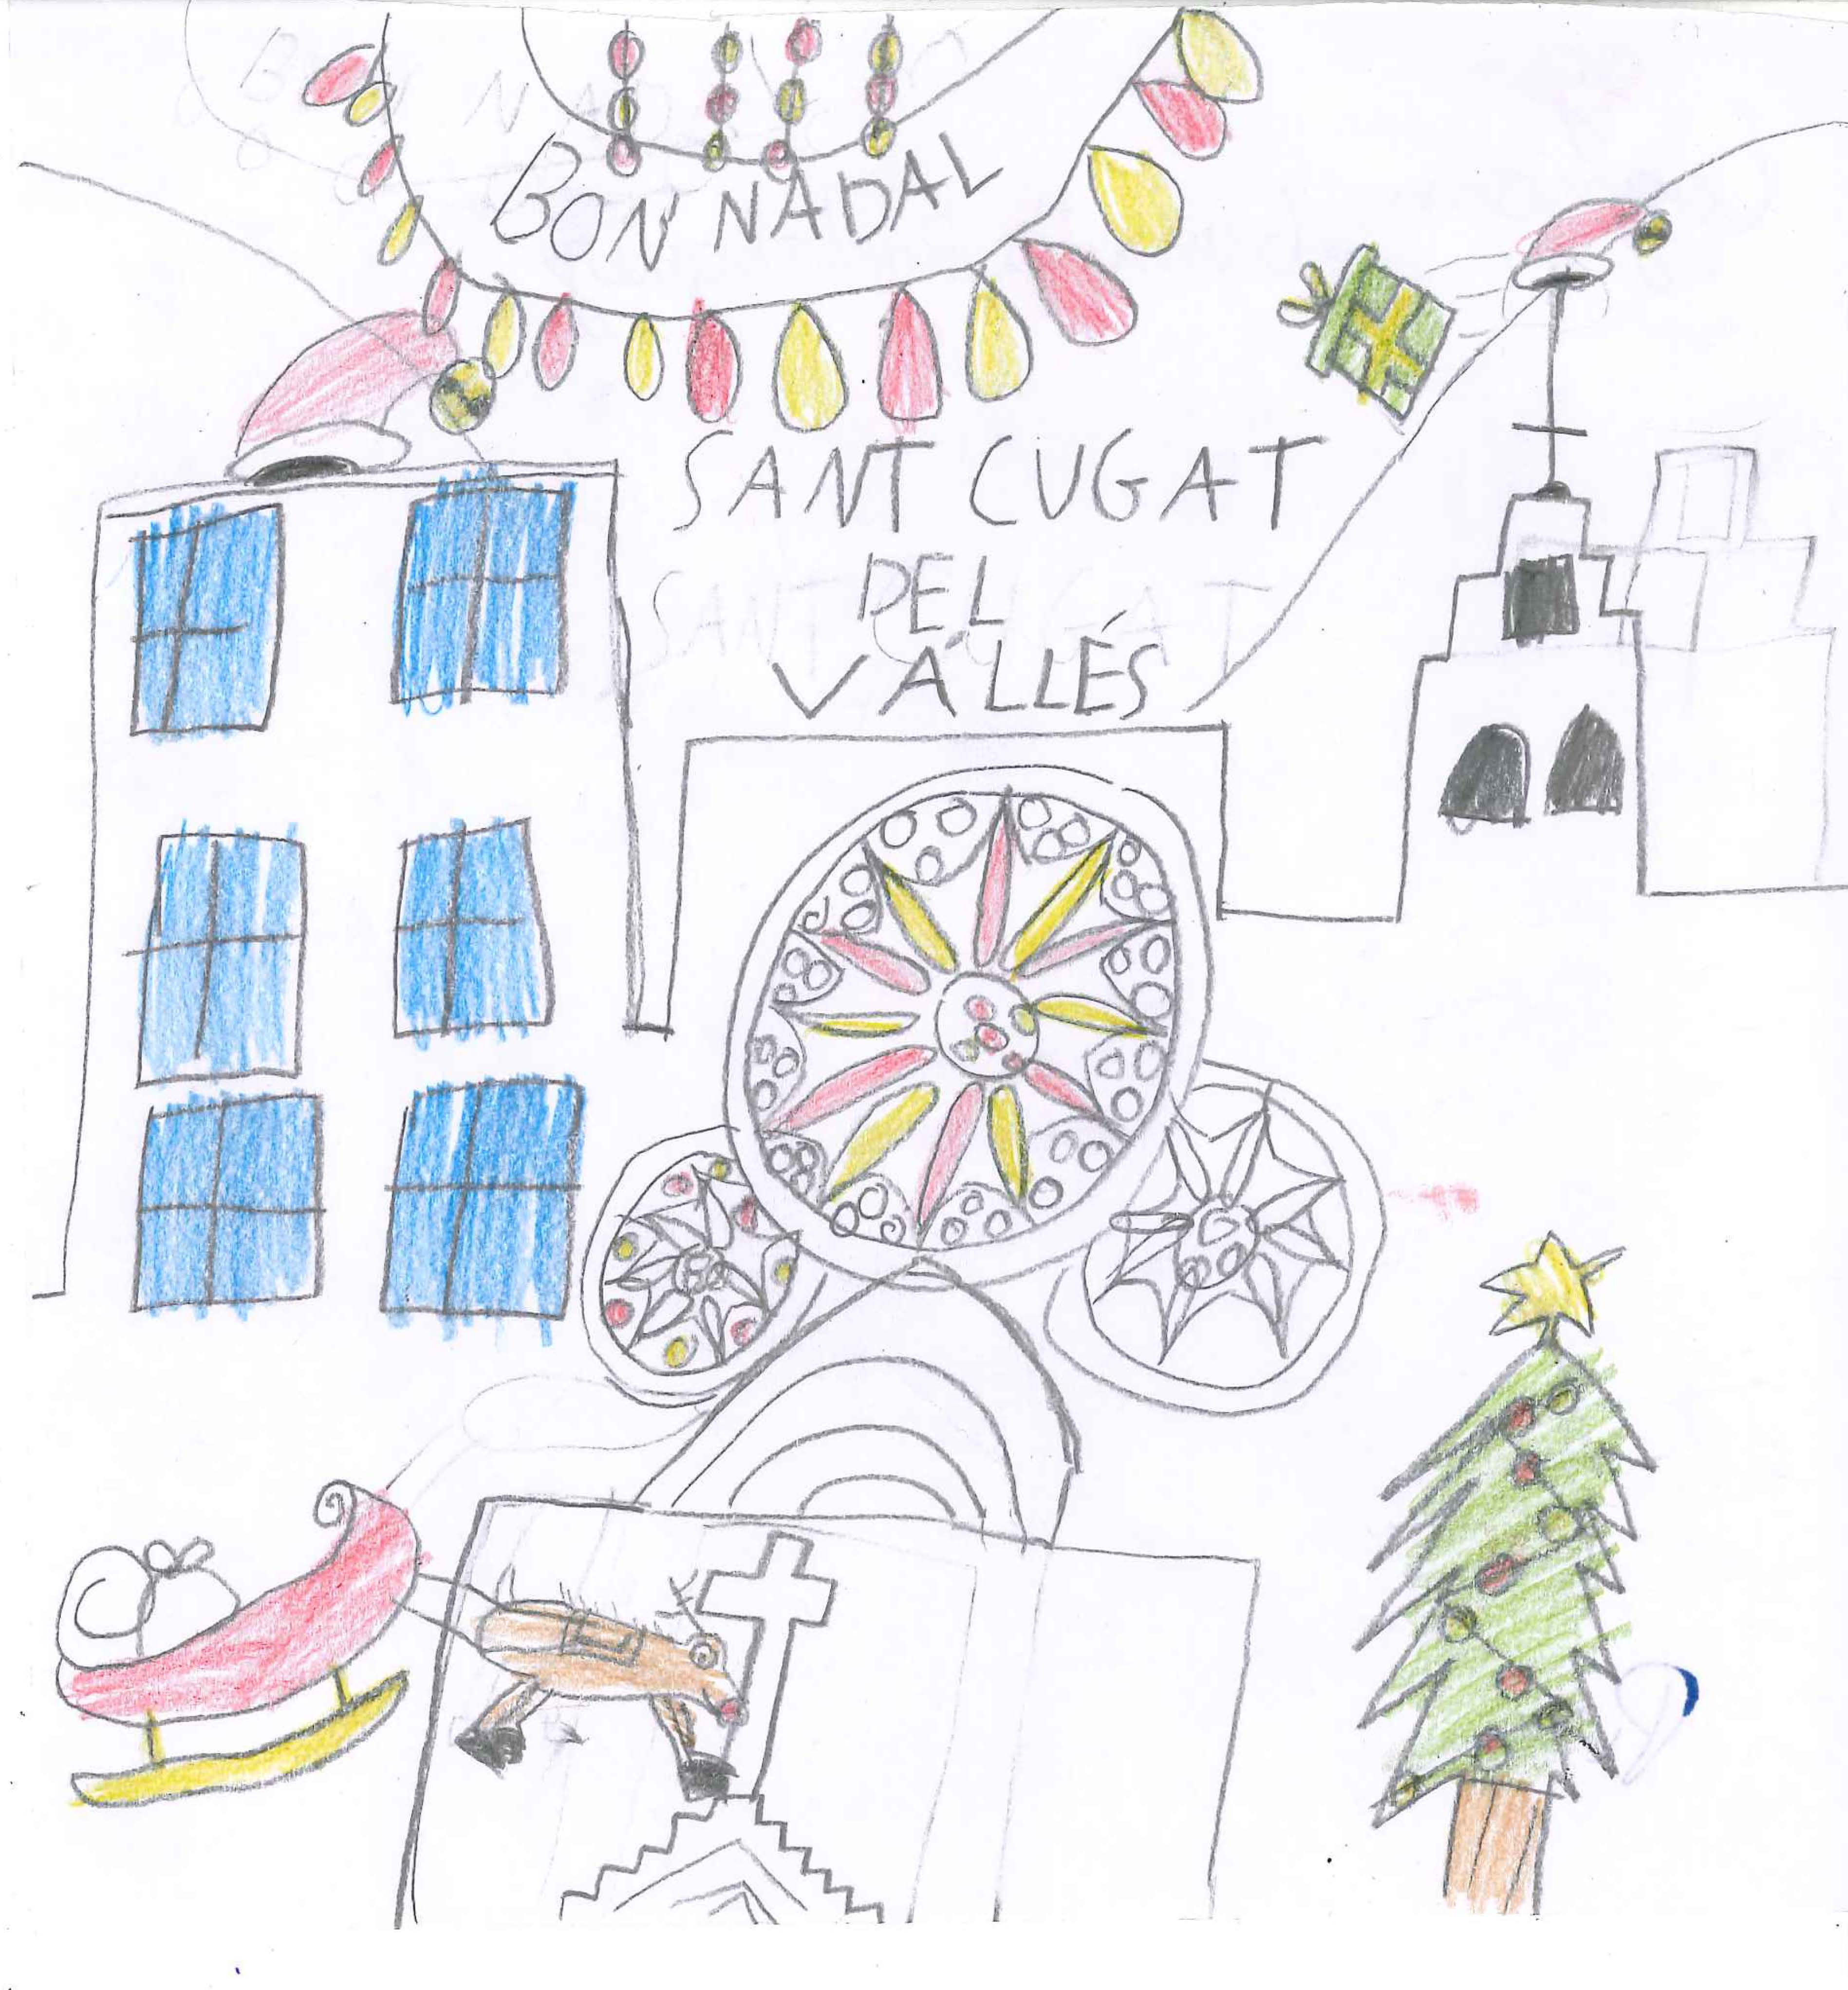 Les postals de l'escola Pins del Vallès pel concurs del TOT